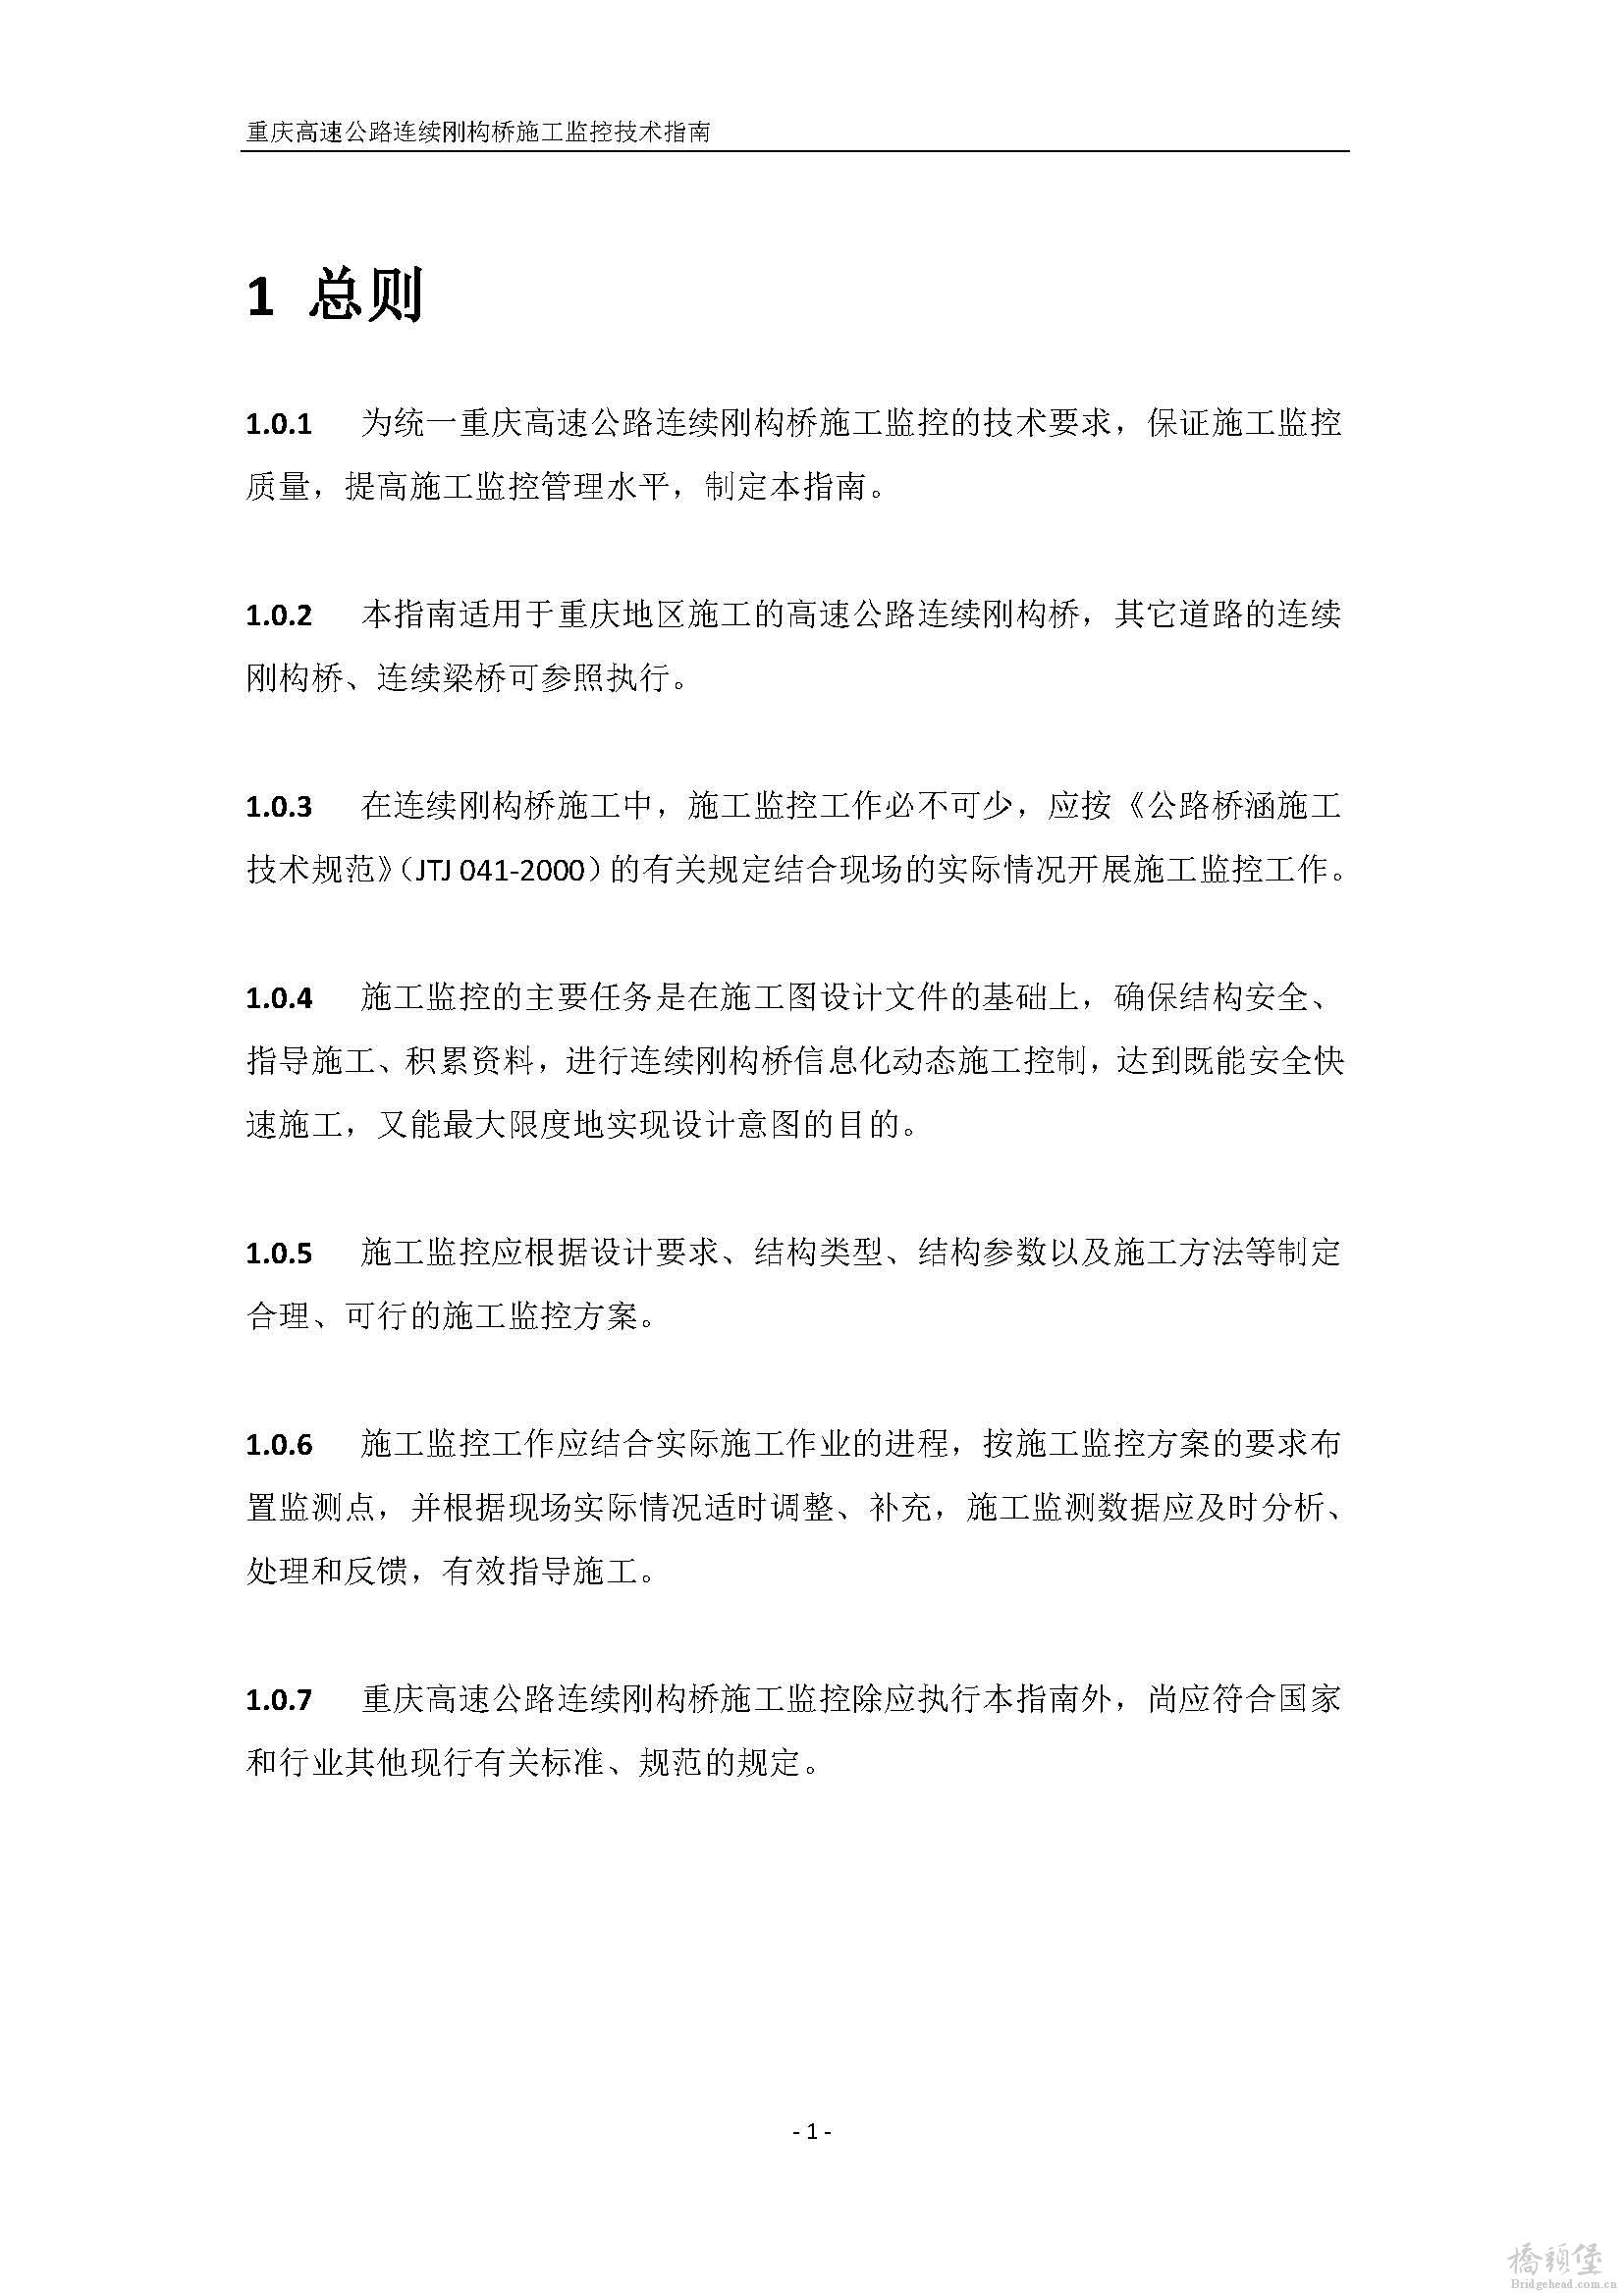 2010重庆高速公路连续刚构桥施工监控技术指南(最终版)_页面_04.jpg